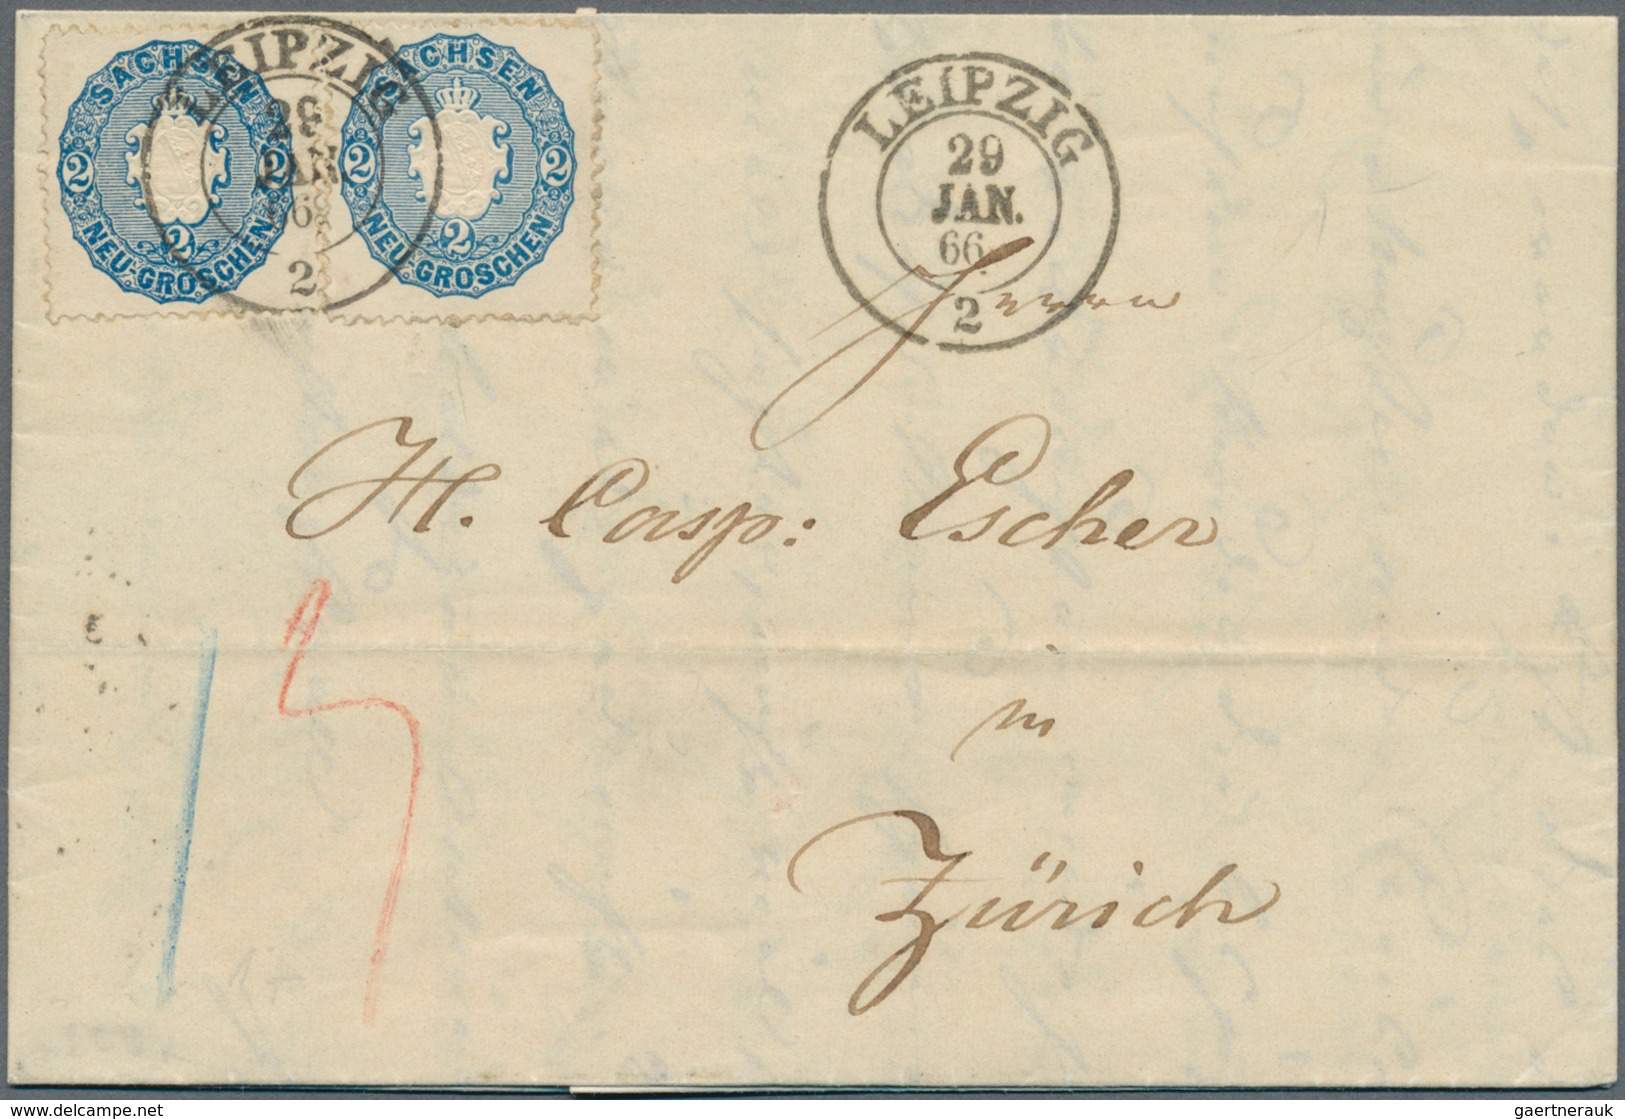 Sachsen - Marken Und Briefe: 1863, Zweimal Wappen 2 Ngr. Blau Auf Frischem Luxus-Faltbrief Mit K2 "L - Saxe